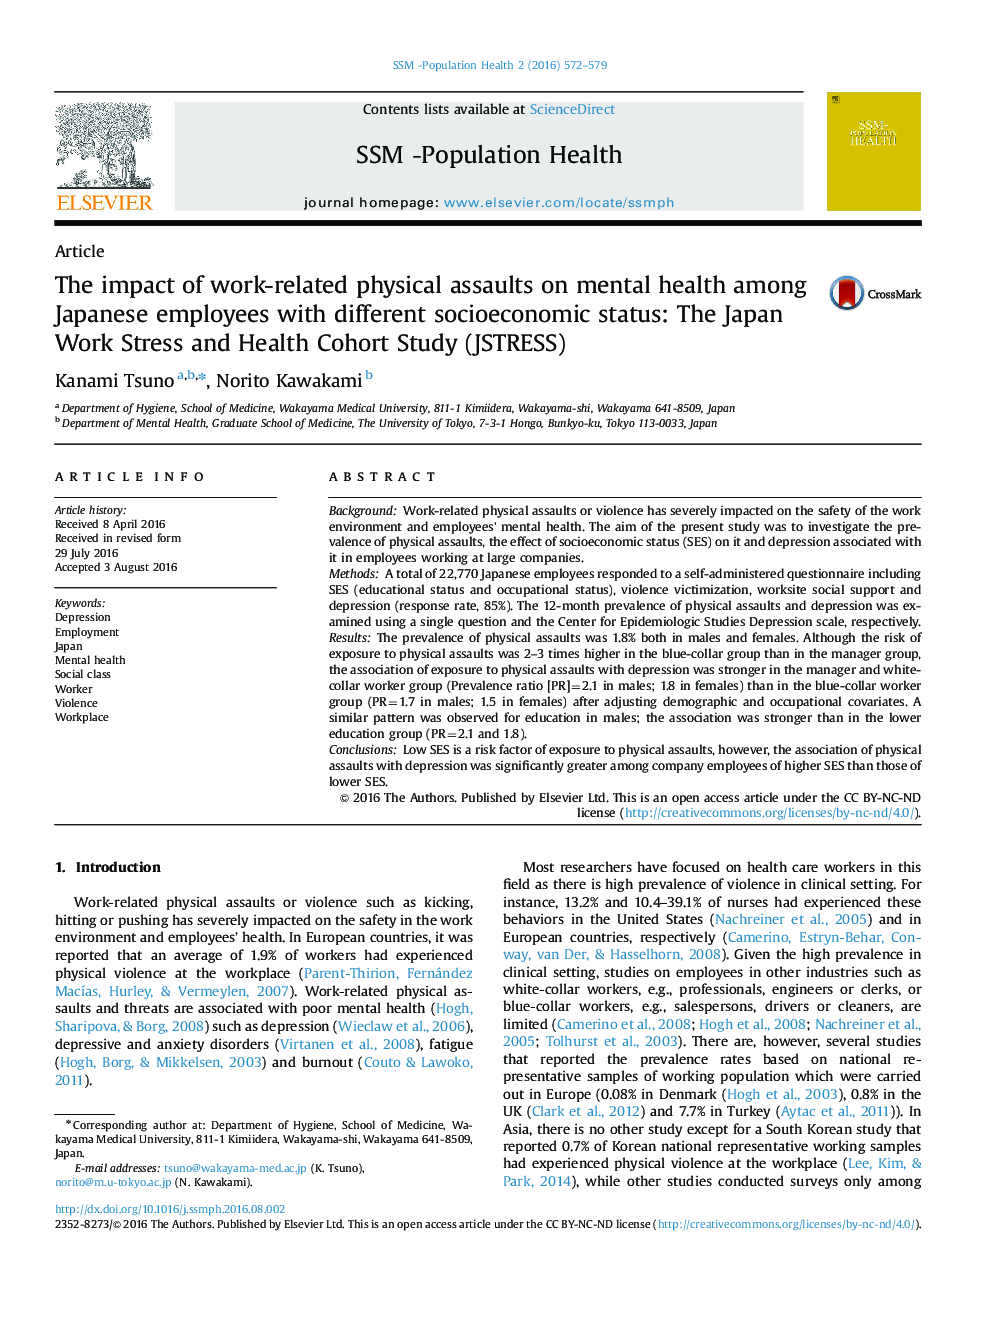 تاثیر حملات فیزیکی مربوط به کار بر سلامت روانی در میان کارکنان ژاپنی با وضعیت های مختلف اجتماعی و اقتصادی: مطالعه استرس کار و سلامت کوهورت ژاپن (JSTRESS)